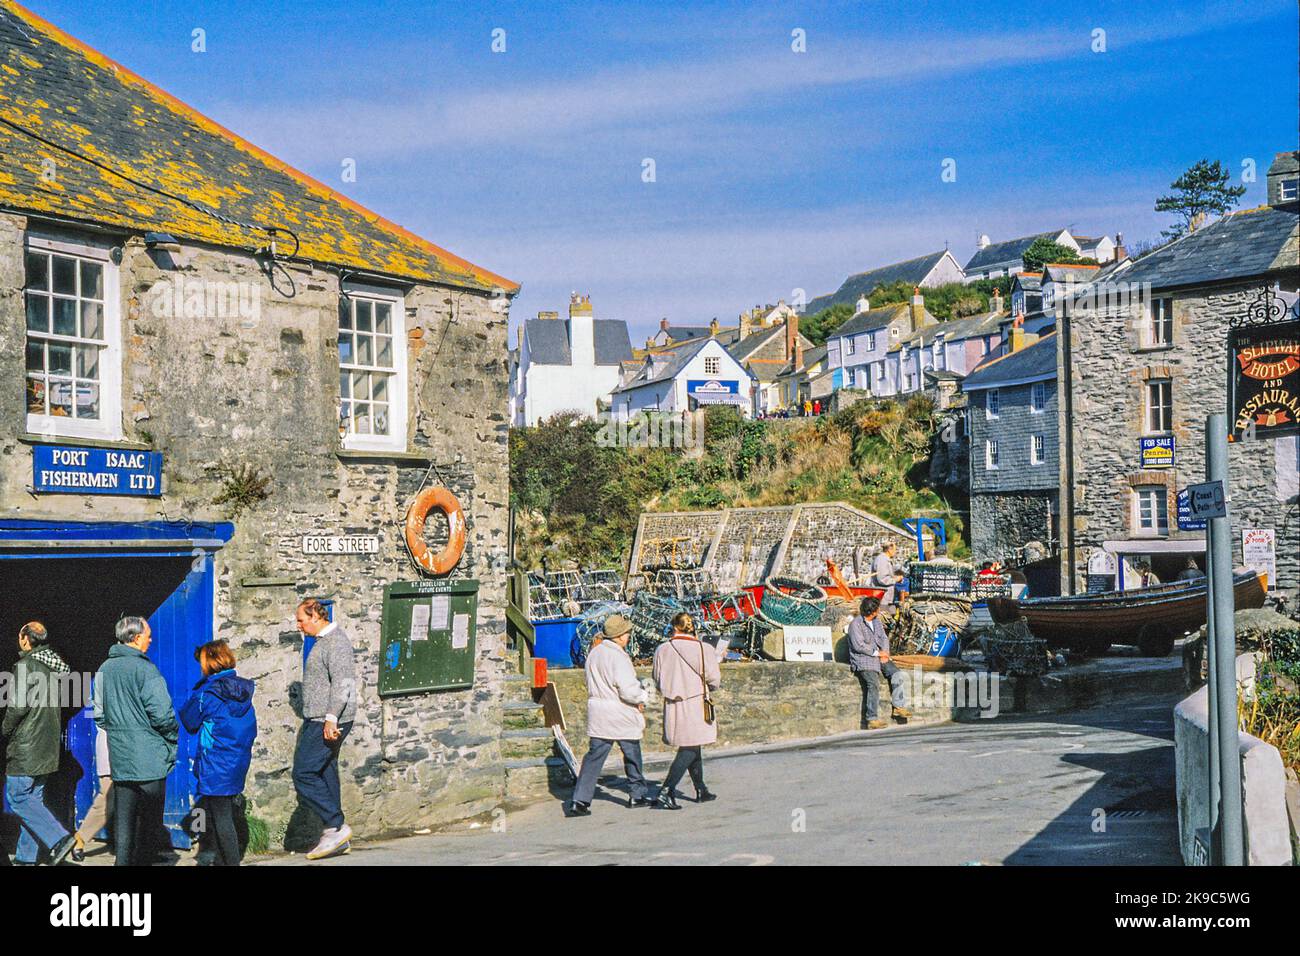 Port Issac Harbor 1980er Jahre, Cornwall, England, UK Zeitraum Fotografie Fischindustrie Stockfoto